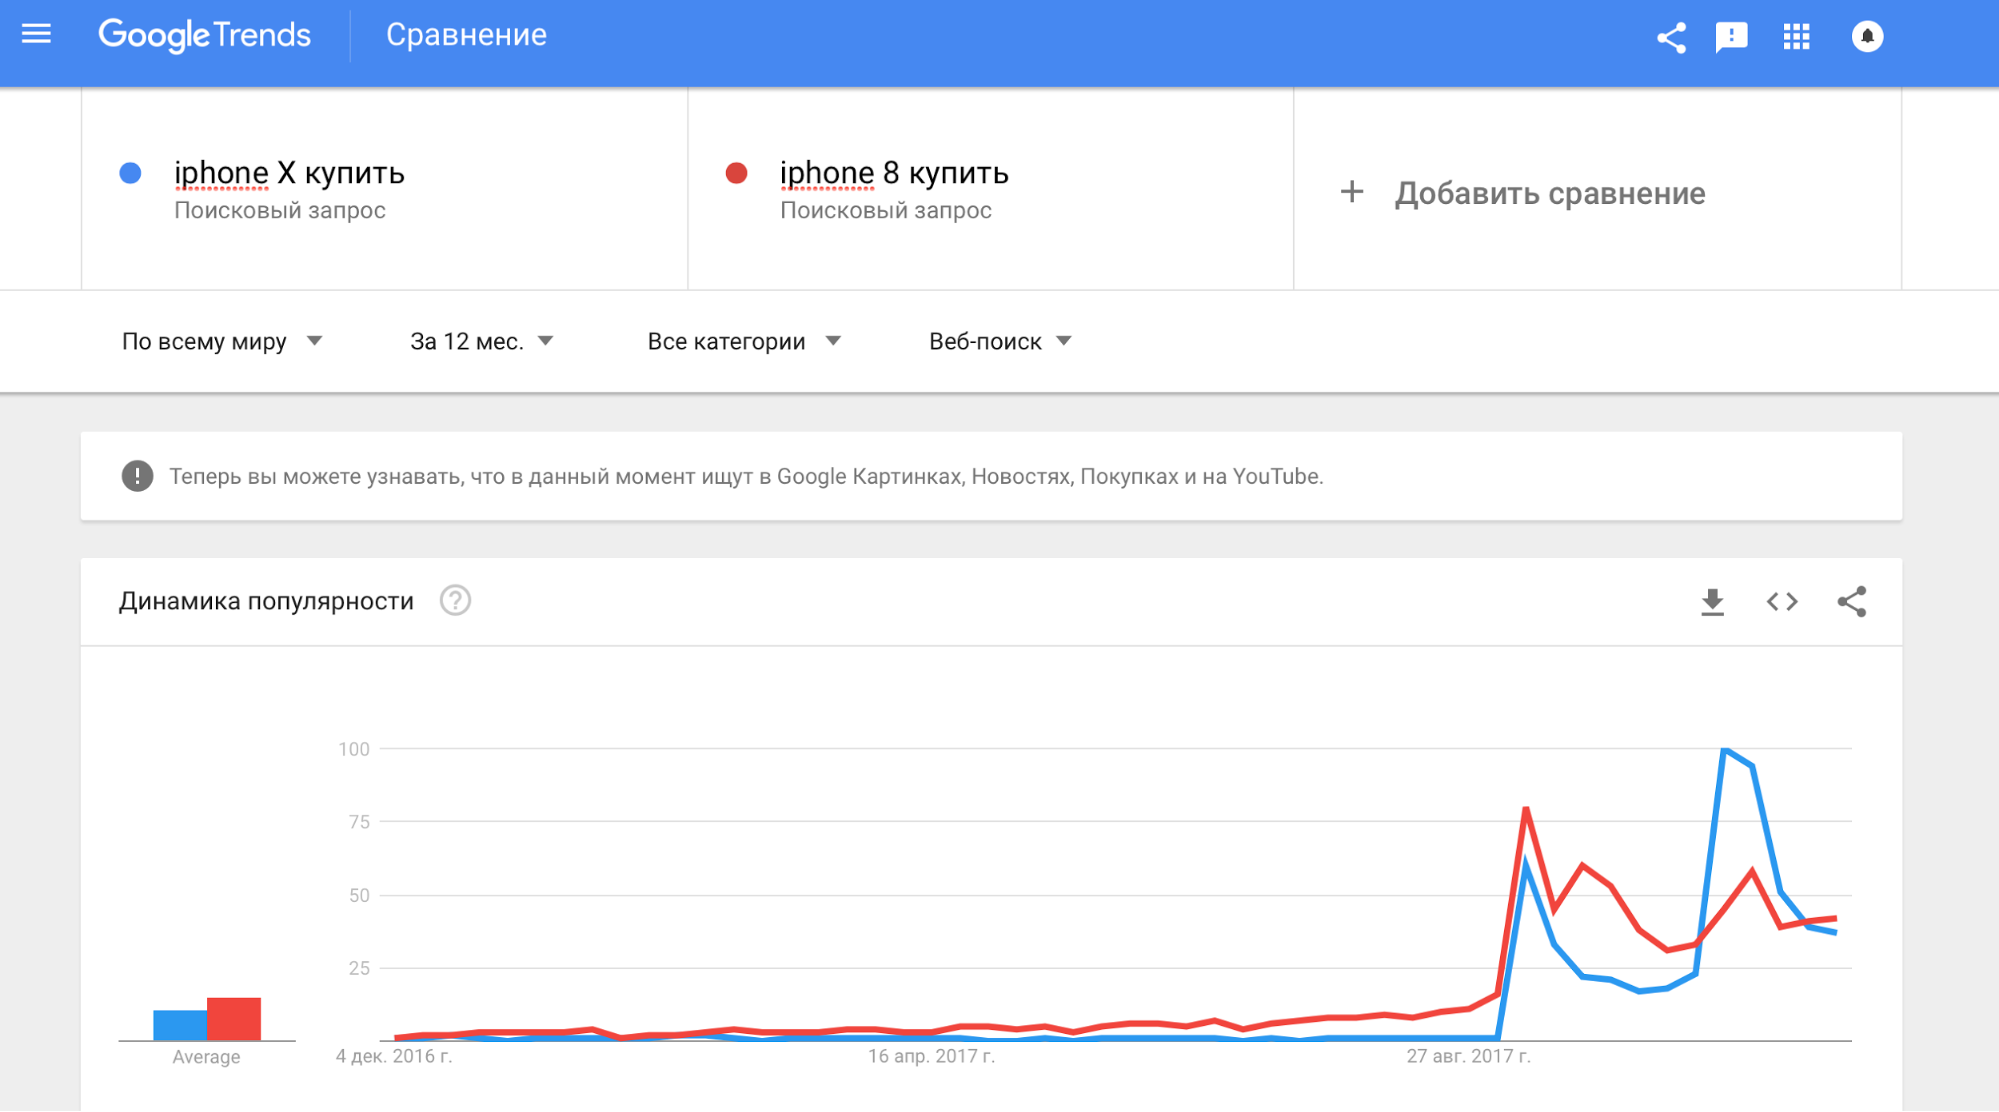 Сравнение запросов «iPhone X купить» и «iPhone 8 купить» в Google Trends